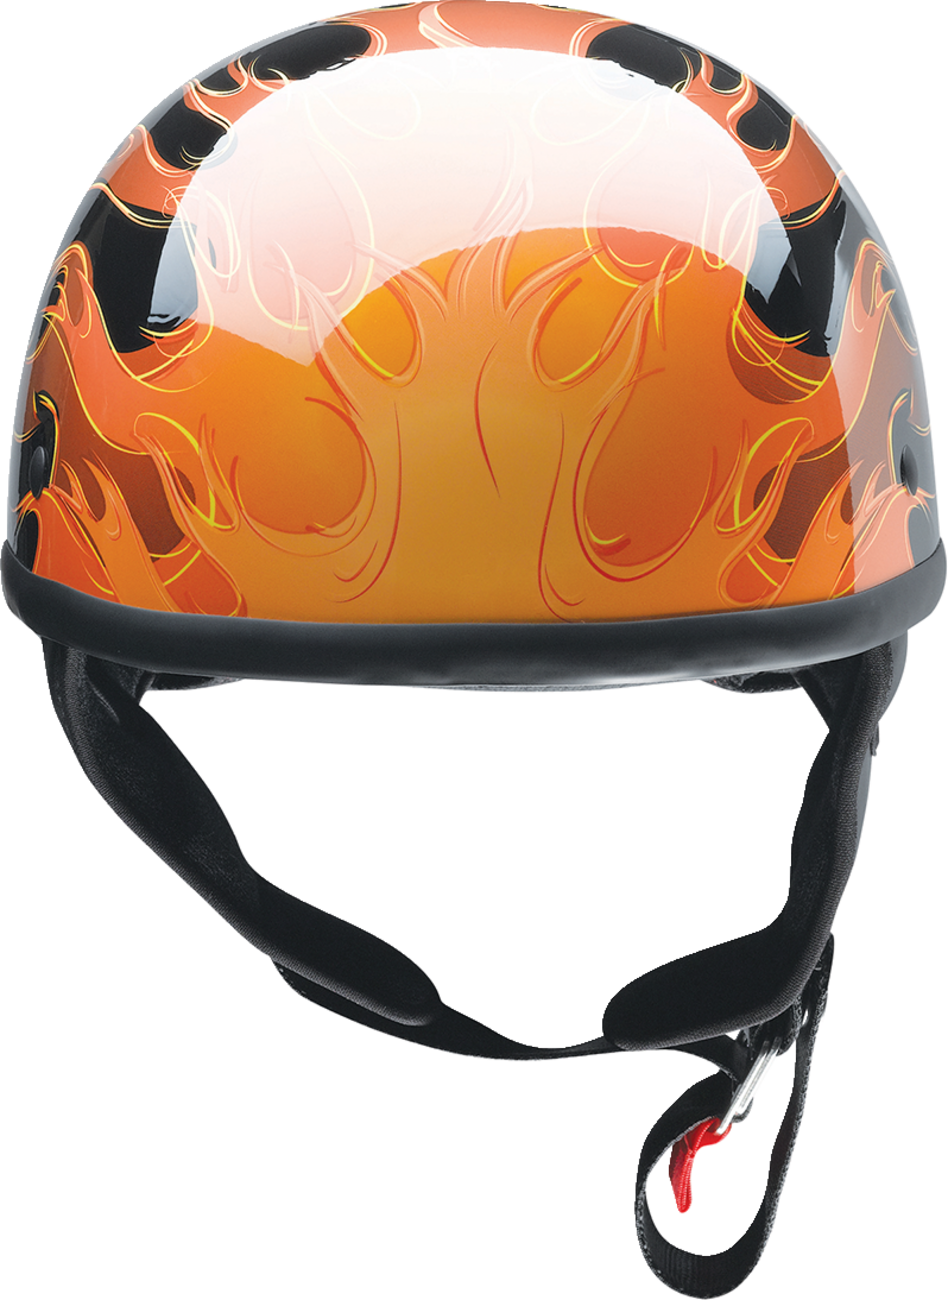 Z1R CC Beanie Helmet - Hellfire - Orange - Small 0103-1346